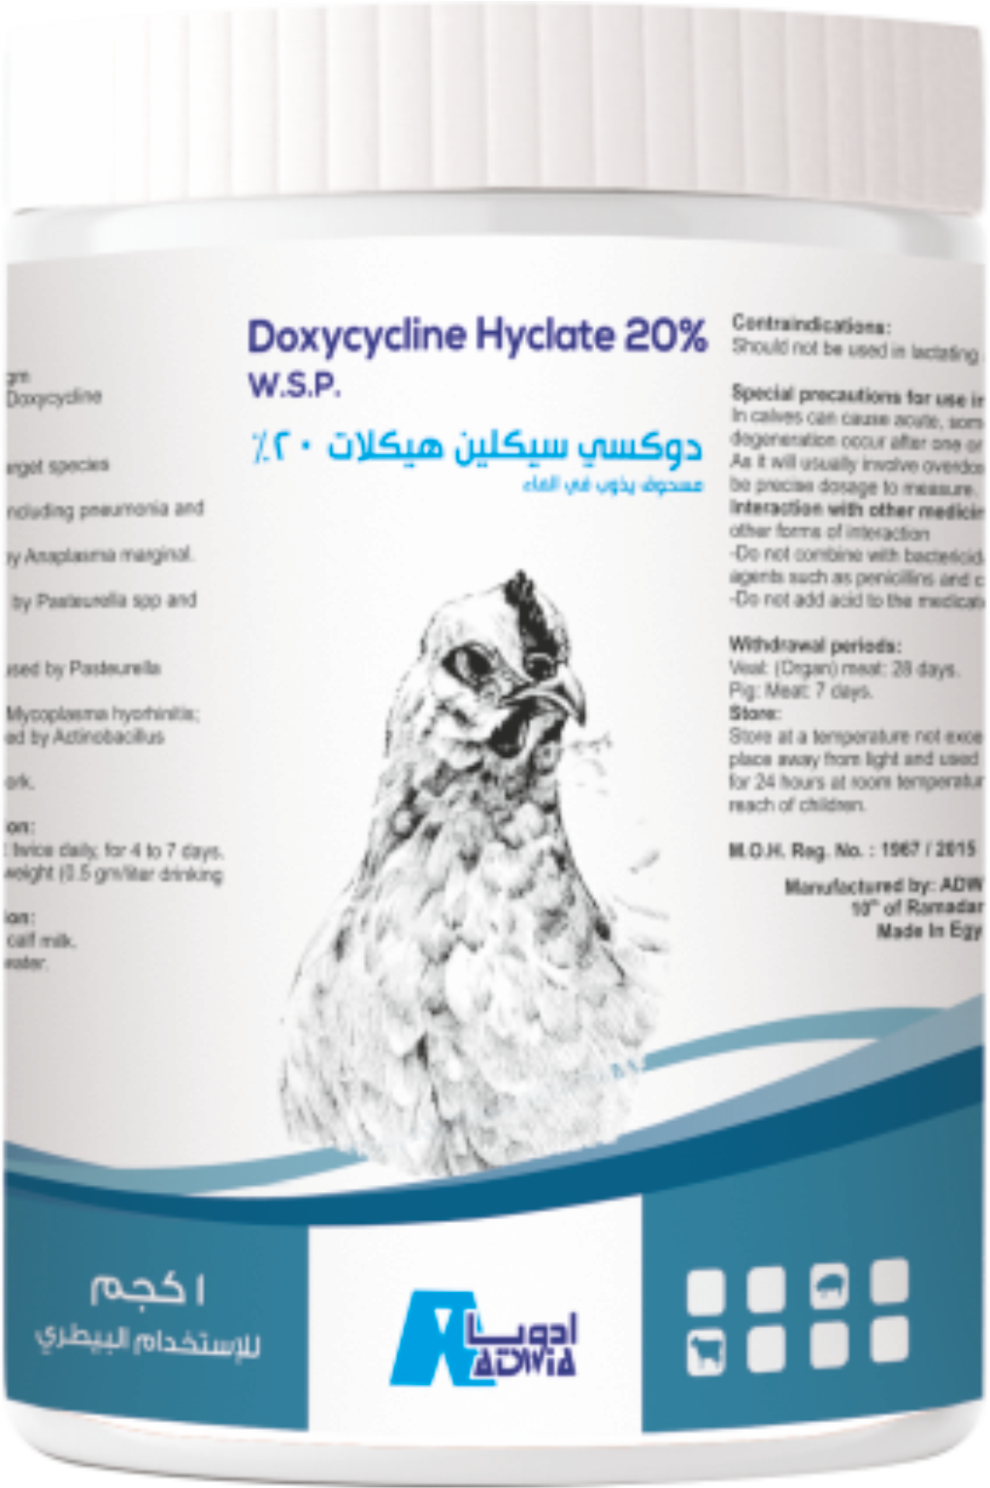 Doxycycline 20%